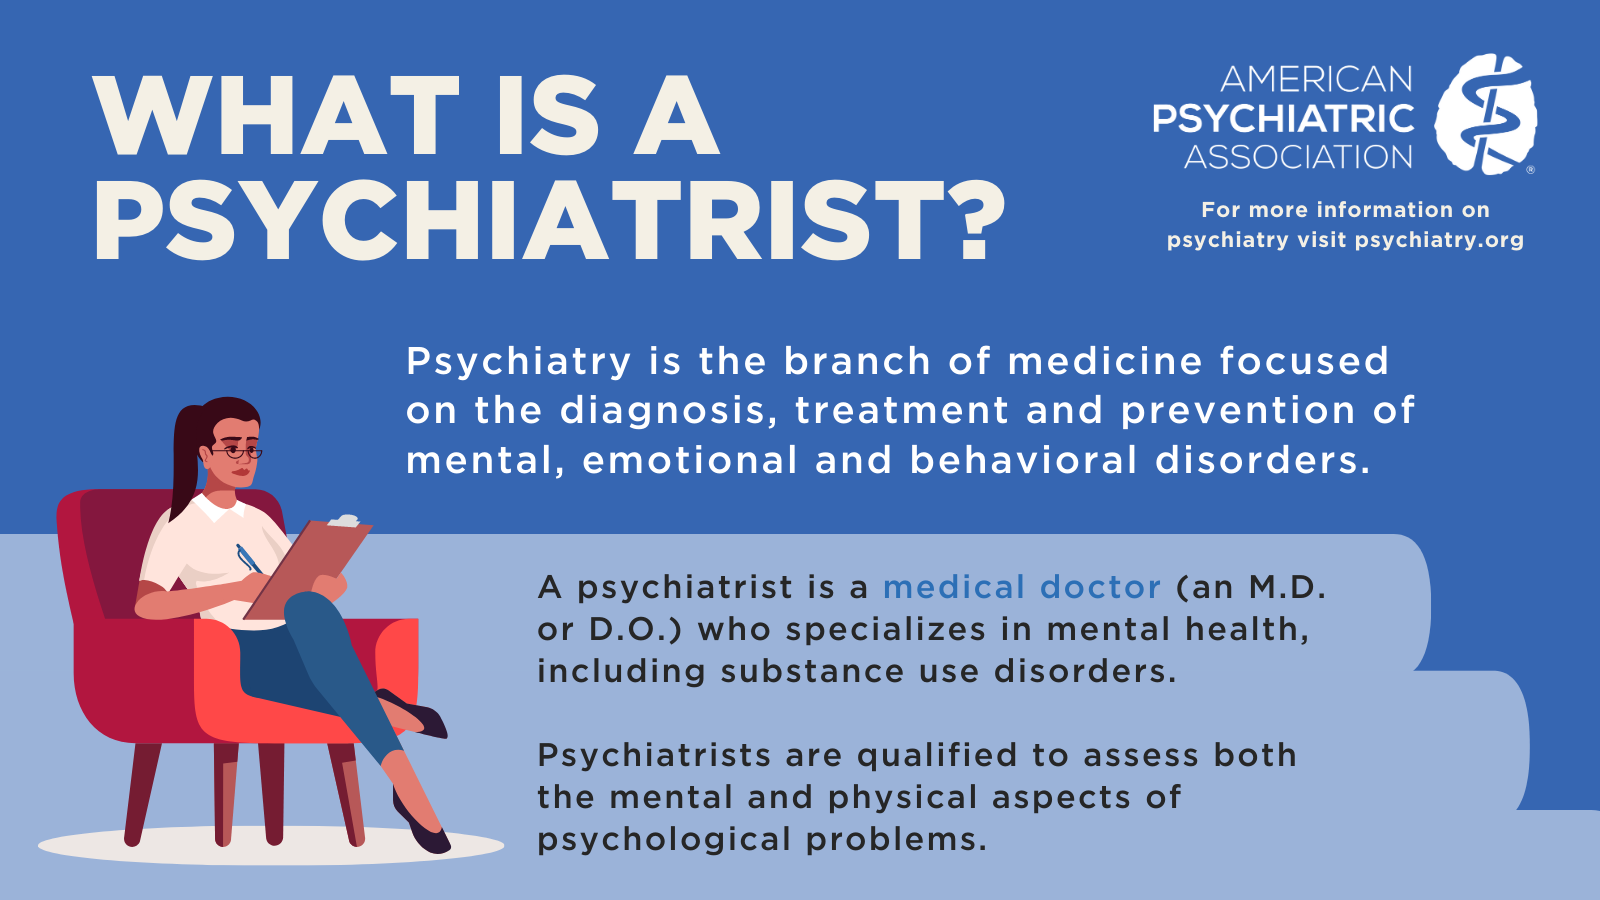 www.psychiatry.org